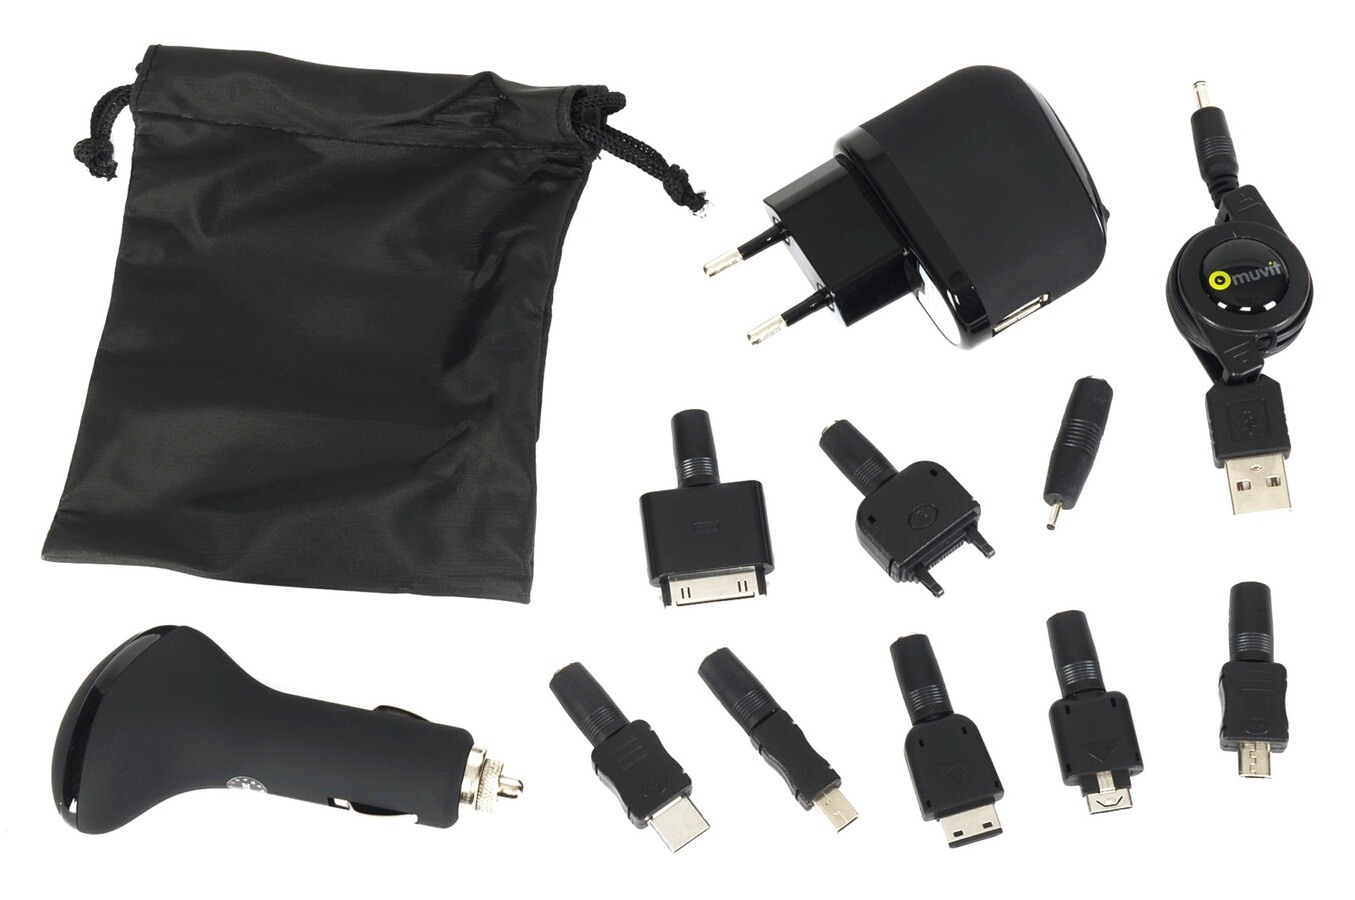 Chargeur pour téléphone mobile Muvit Pack chargement universel + 8